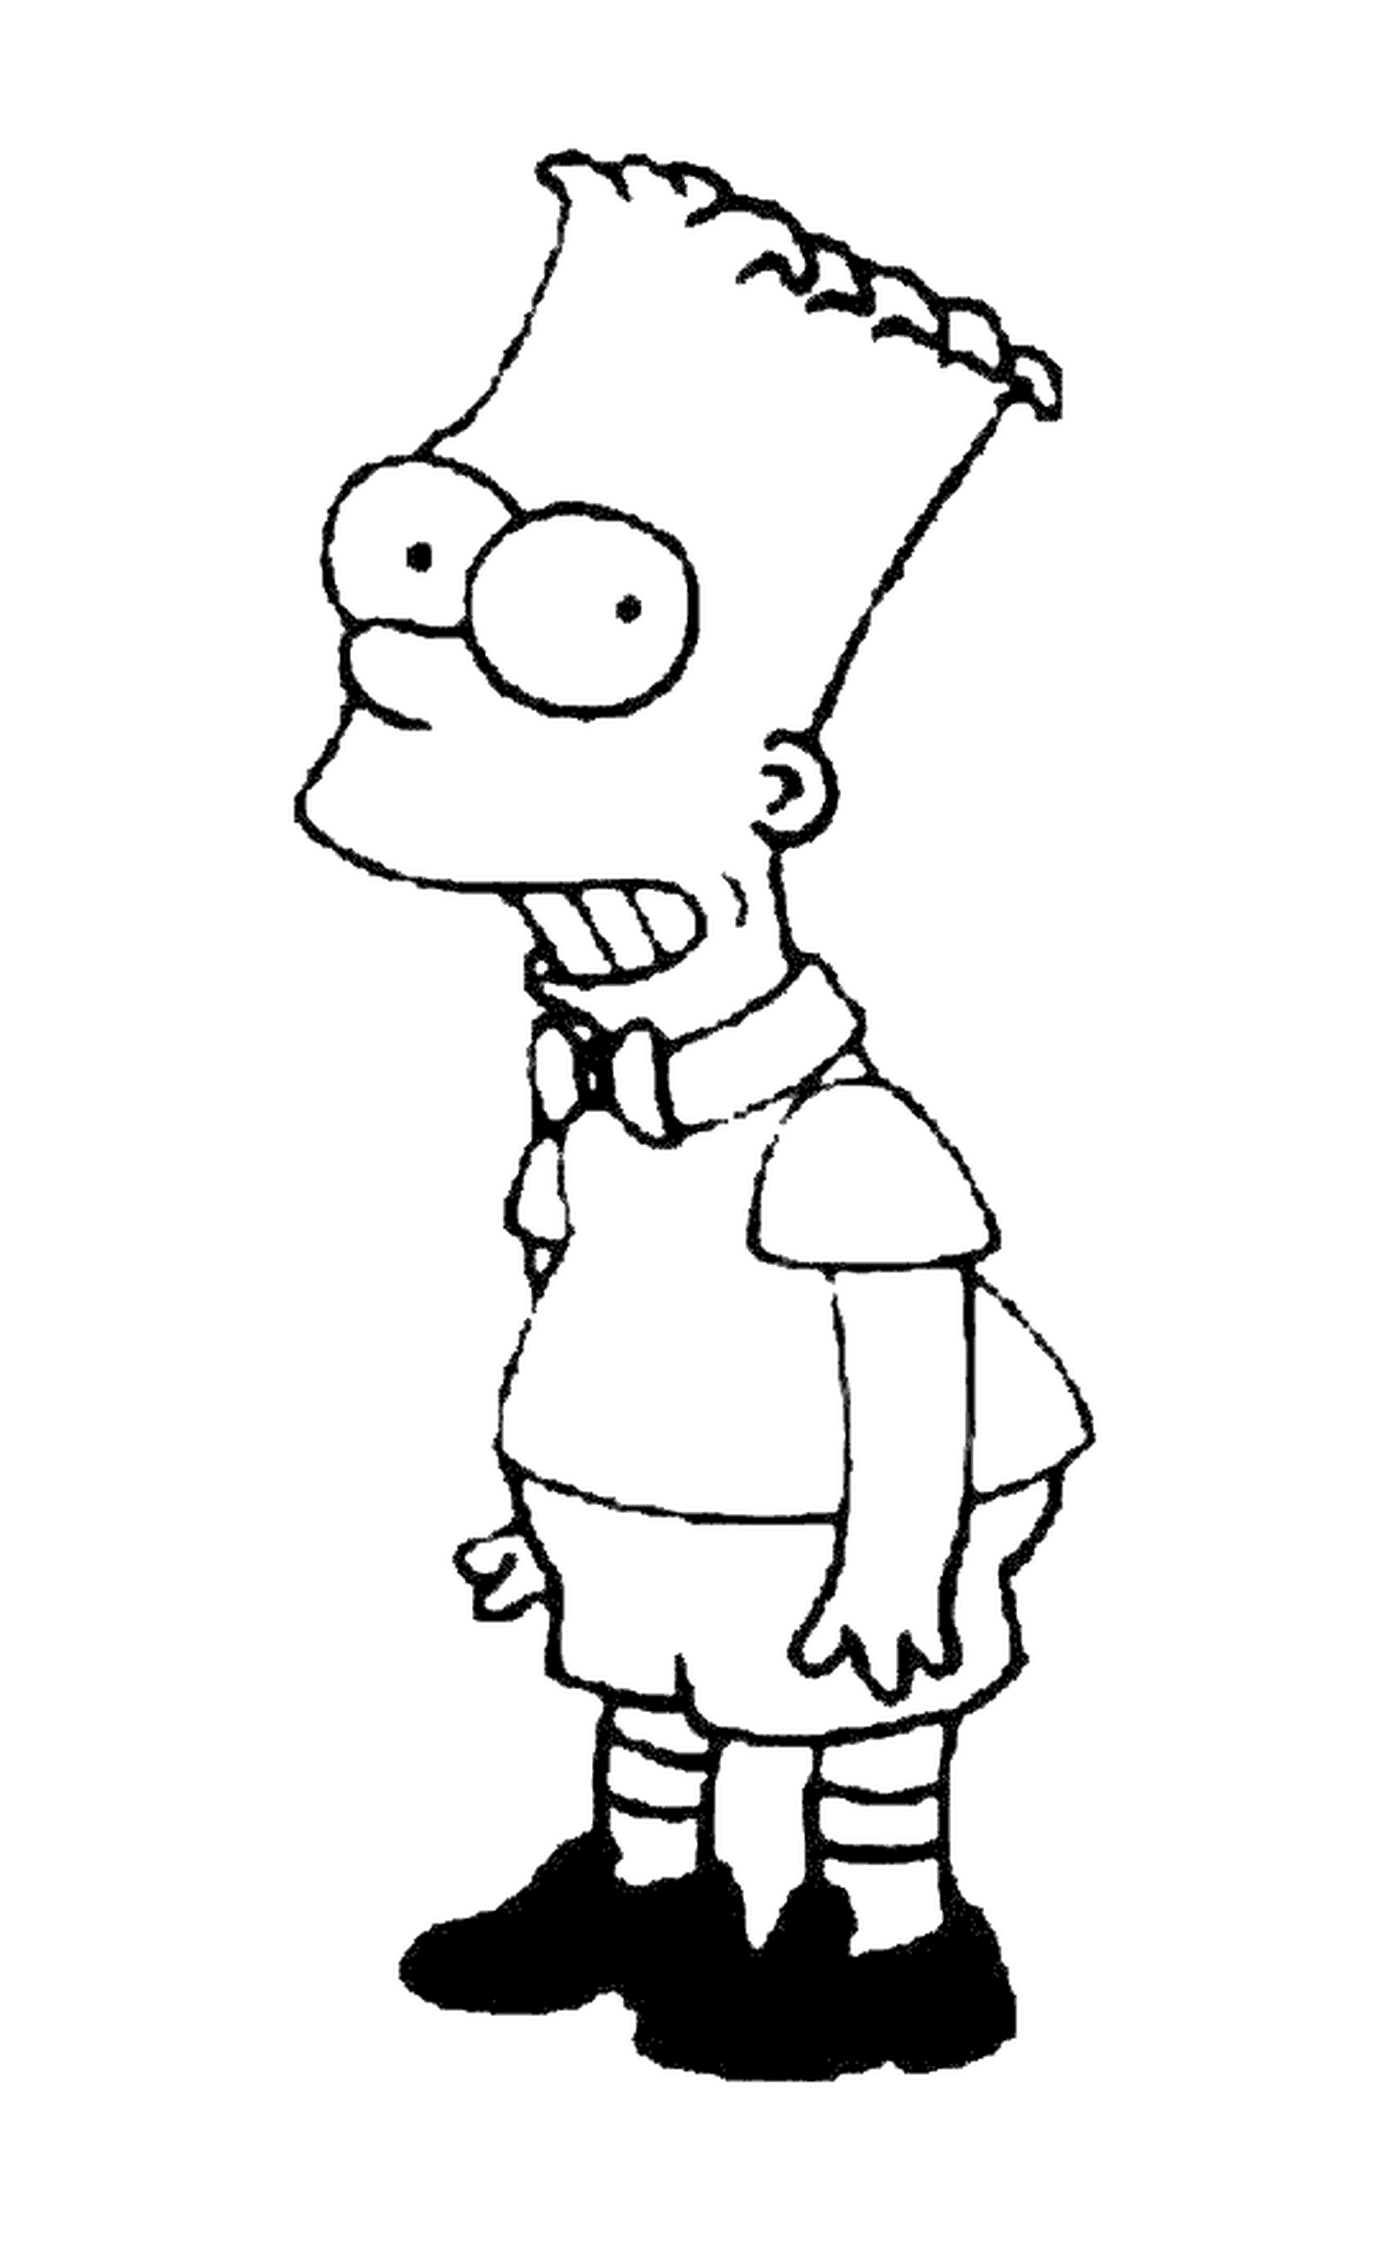  Bart come un bambino modello, personaggio dei Simpson 